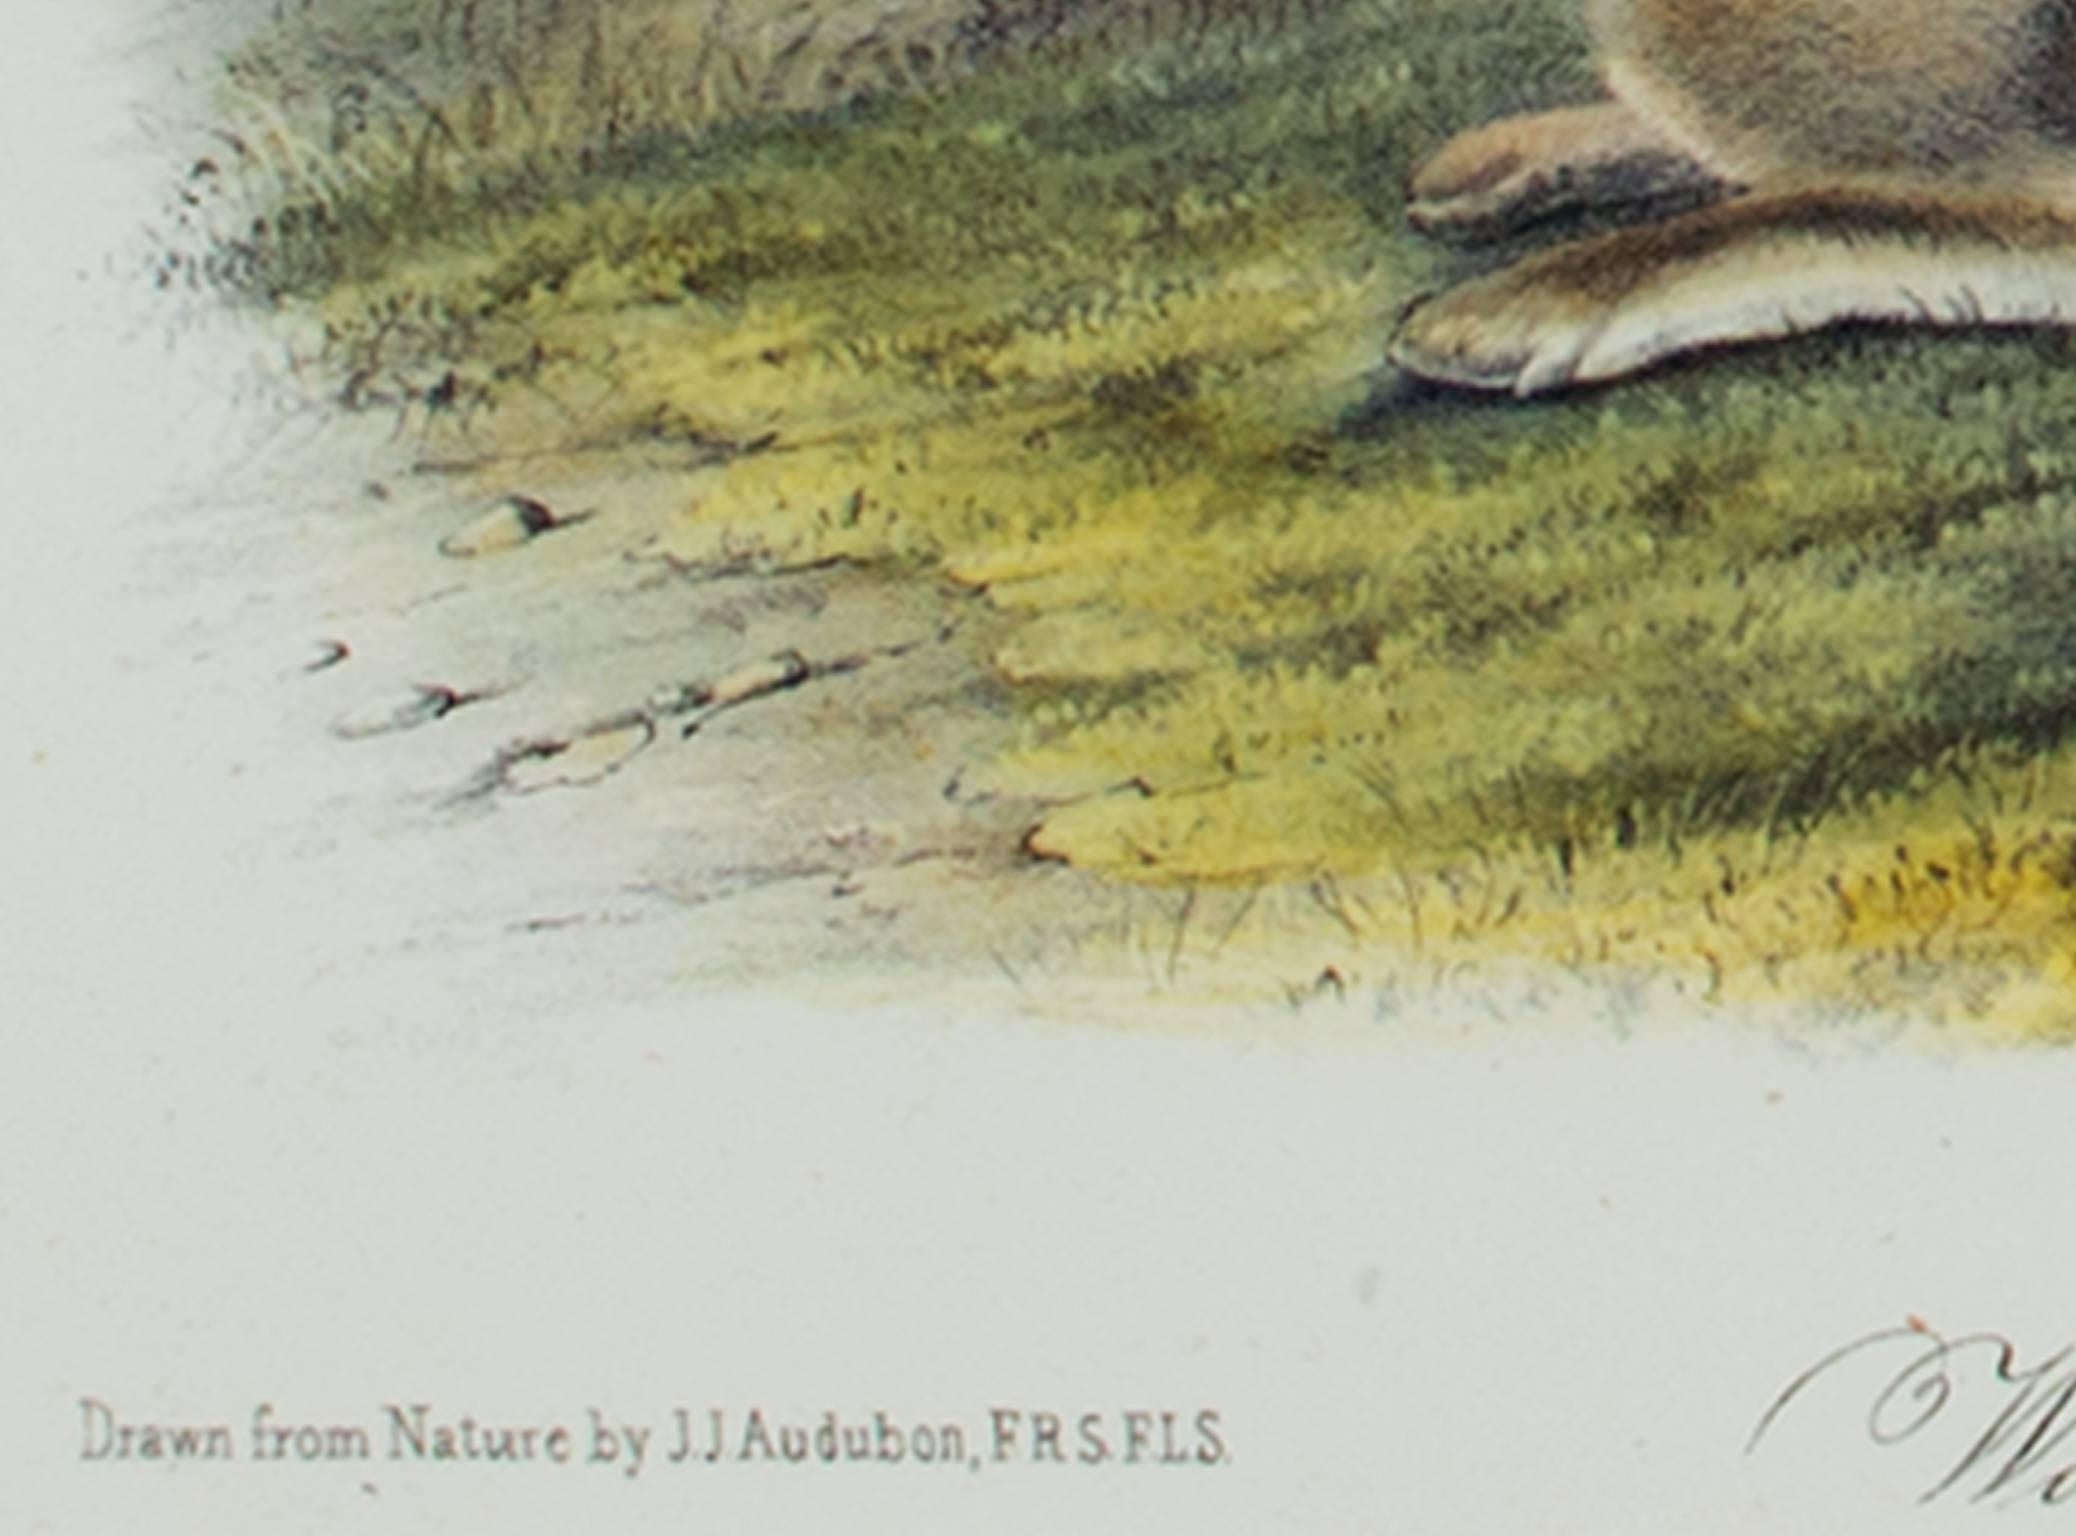 Farblithographie des 19. Jahrhunderts Hare Landschaft Gras Tierdruck Tierwelt (Grau), Animal Print, von John James Audubon